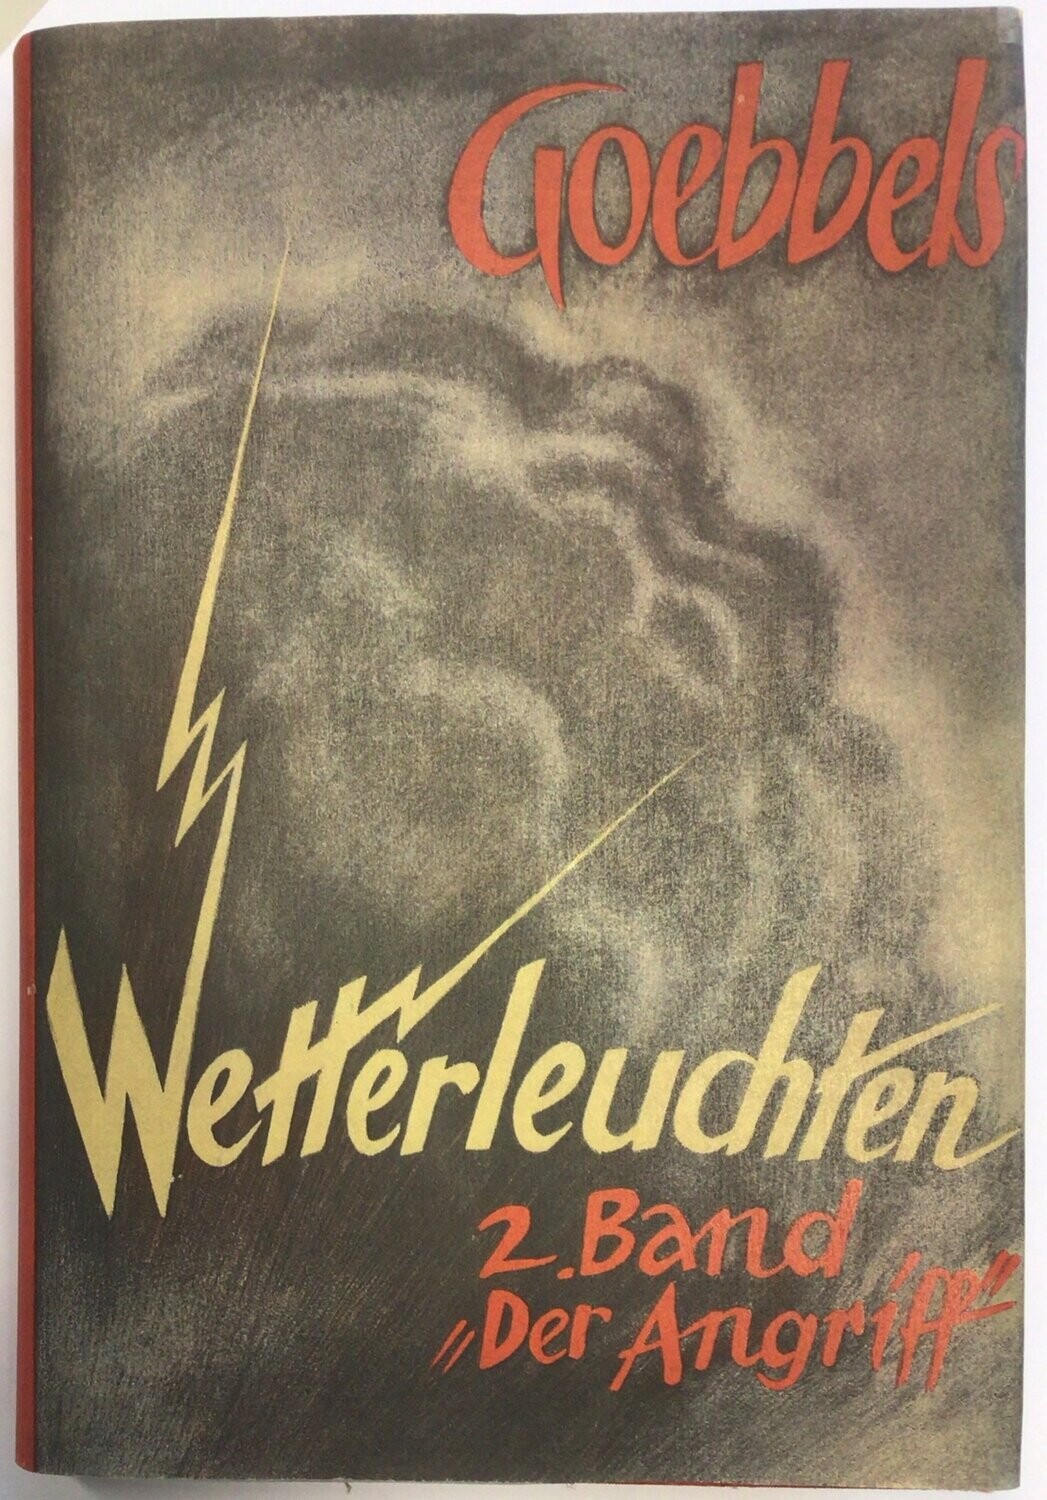 Wetterleuchten - Der Angriff 2. Band - Ganzleinenausgabe (3. Auflage) aus dem Jahr 1939 mit Schutzumschlag (Kopie)